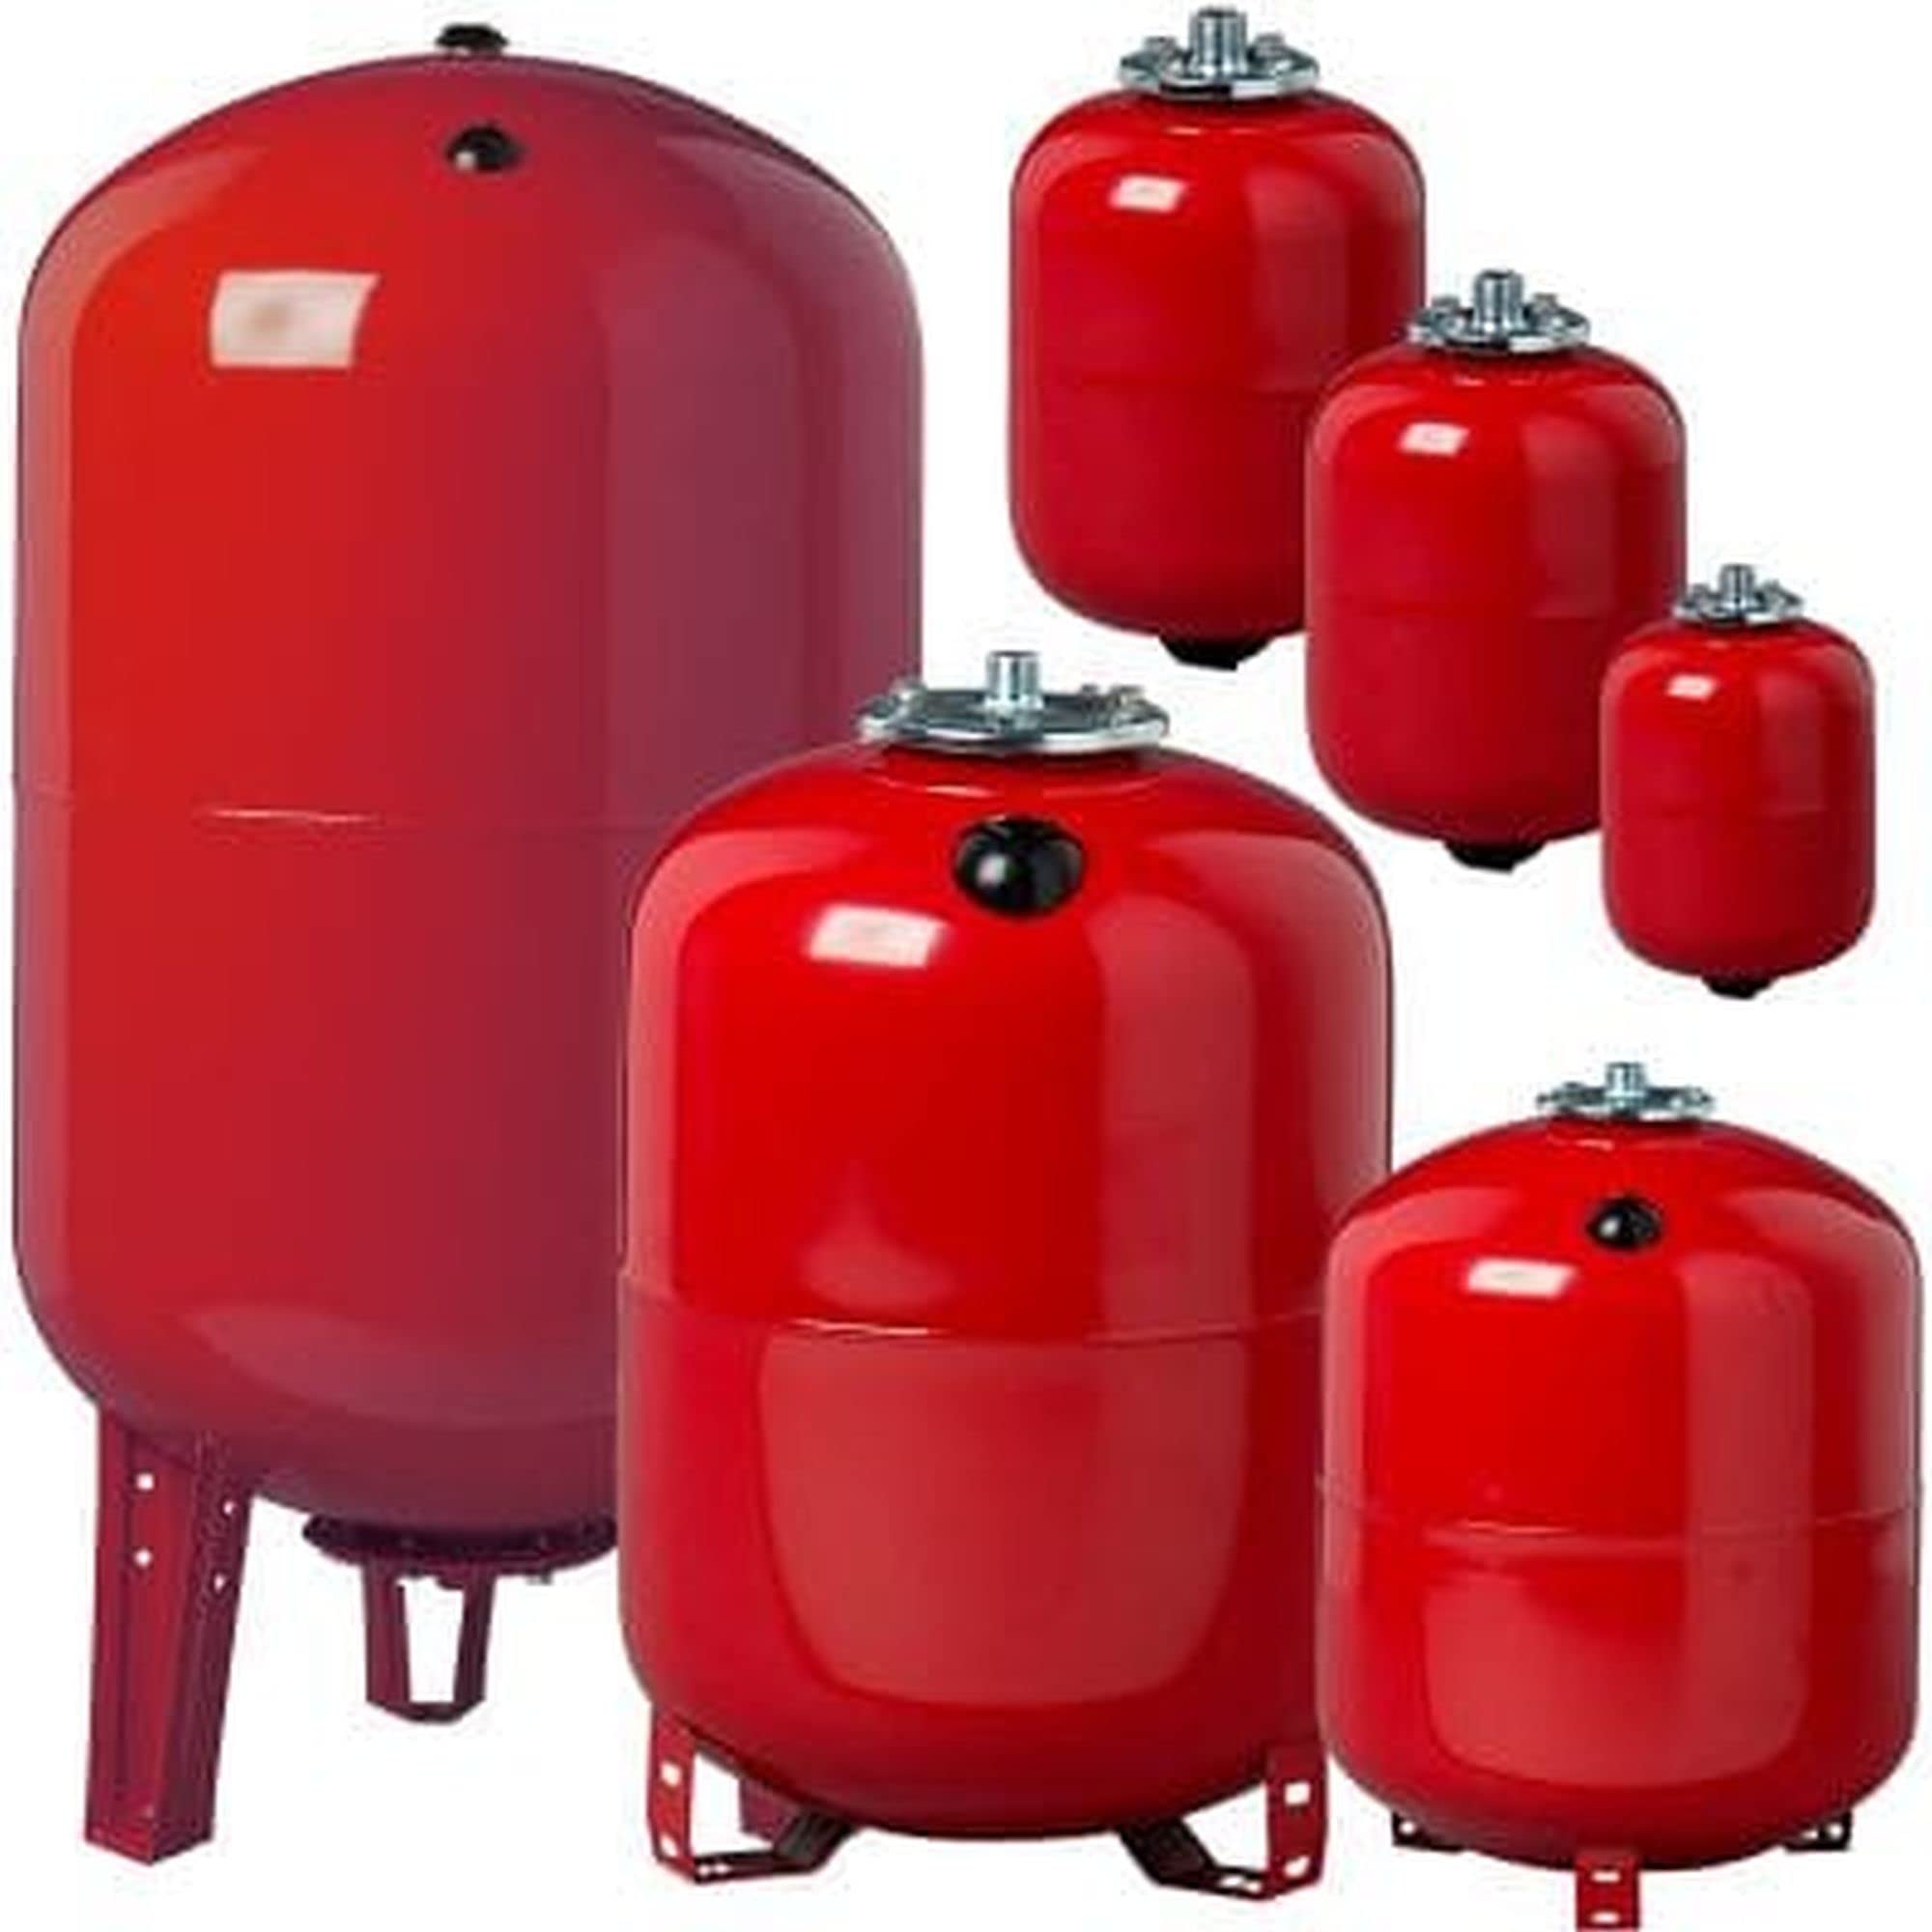 Heizung Ausdehnungsgefäße von 8 Liter bis 500 Liter - Ausgleichsbehälter für konstanten Druck in der Anlage und sicheren Betrieb von Druck- Heiz und Kühlgeräten (60 Liter)